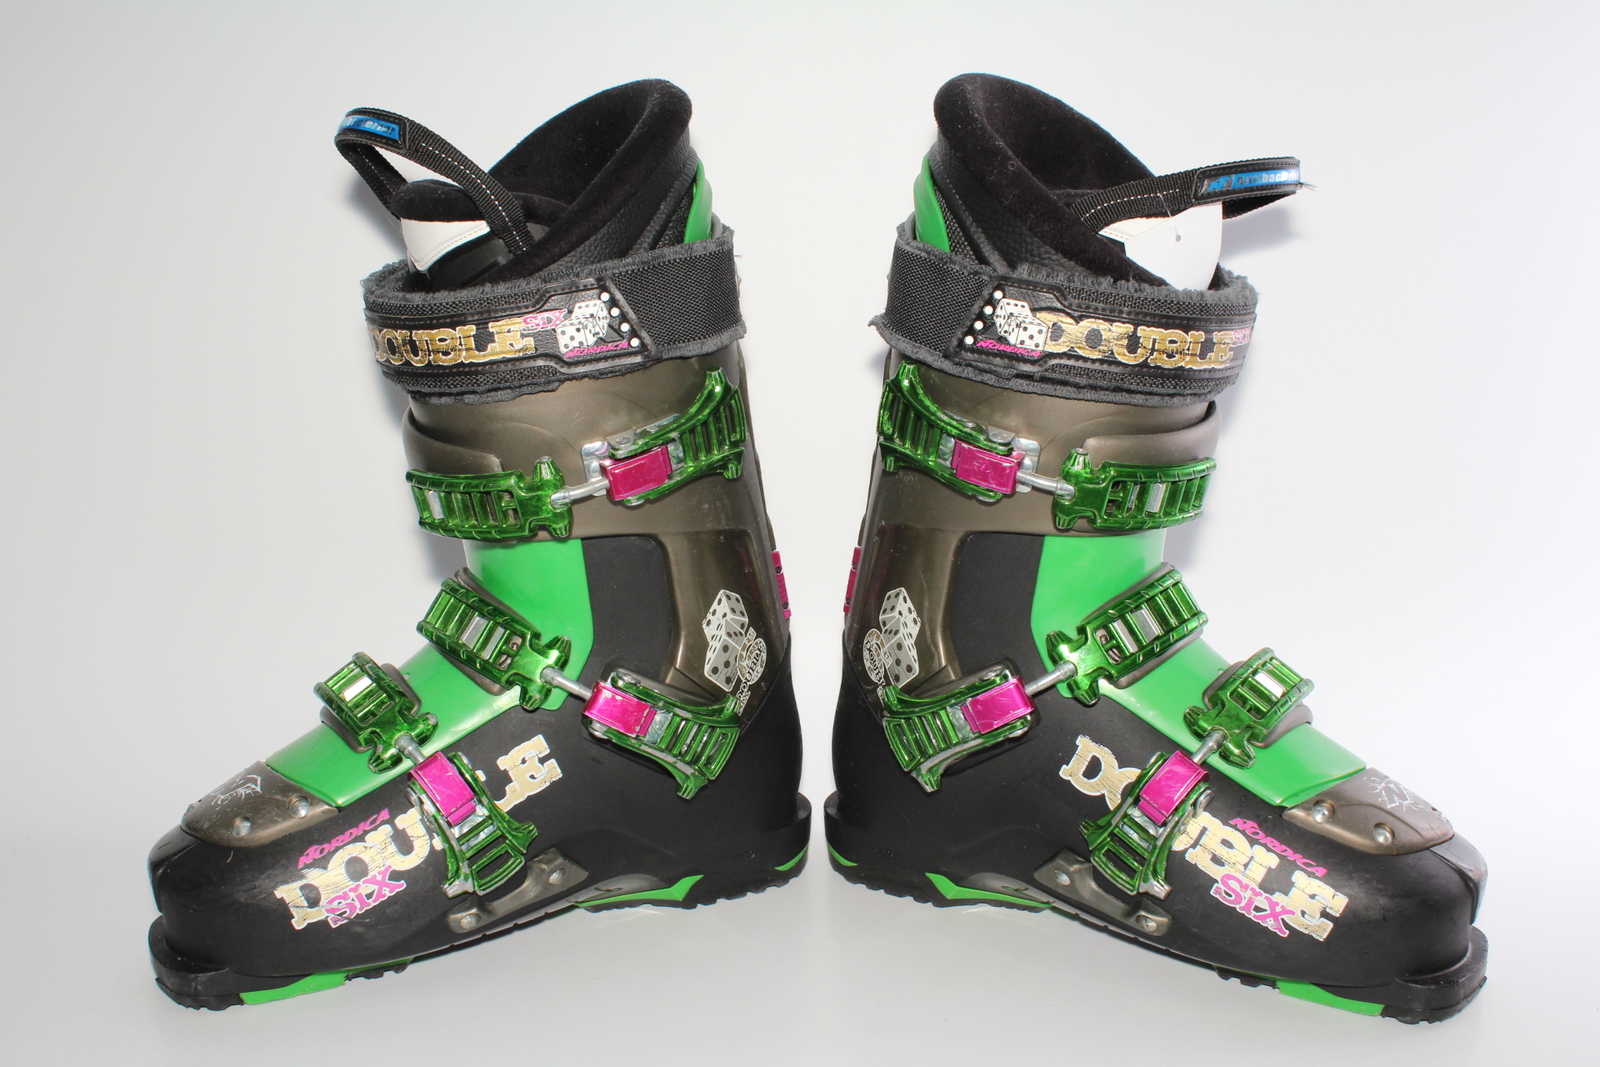 Lyžařské boty Nordica Double six vel. EU40.5 flexe 100